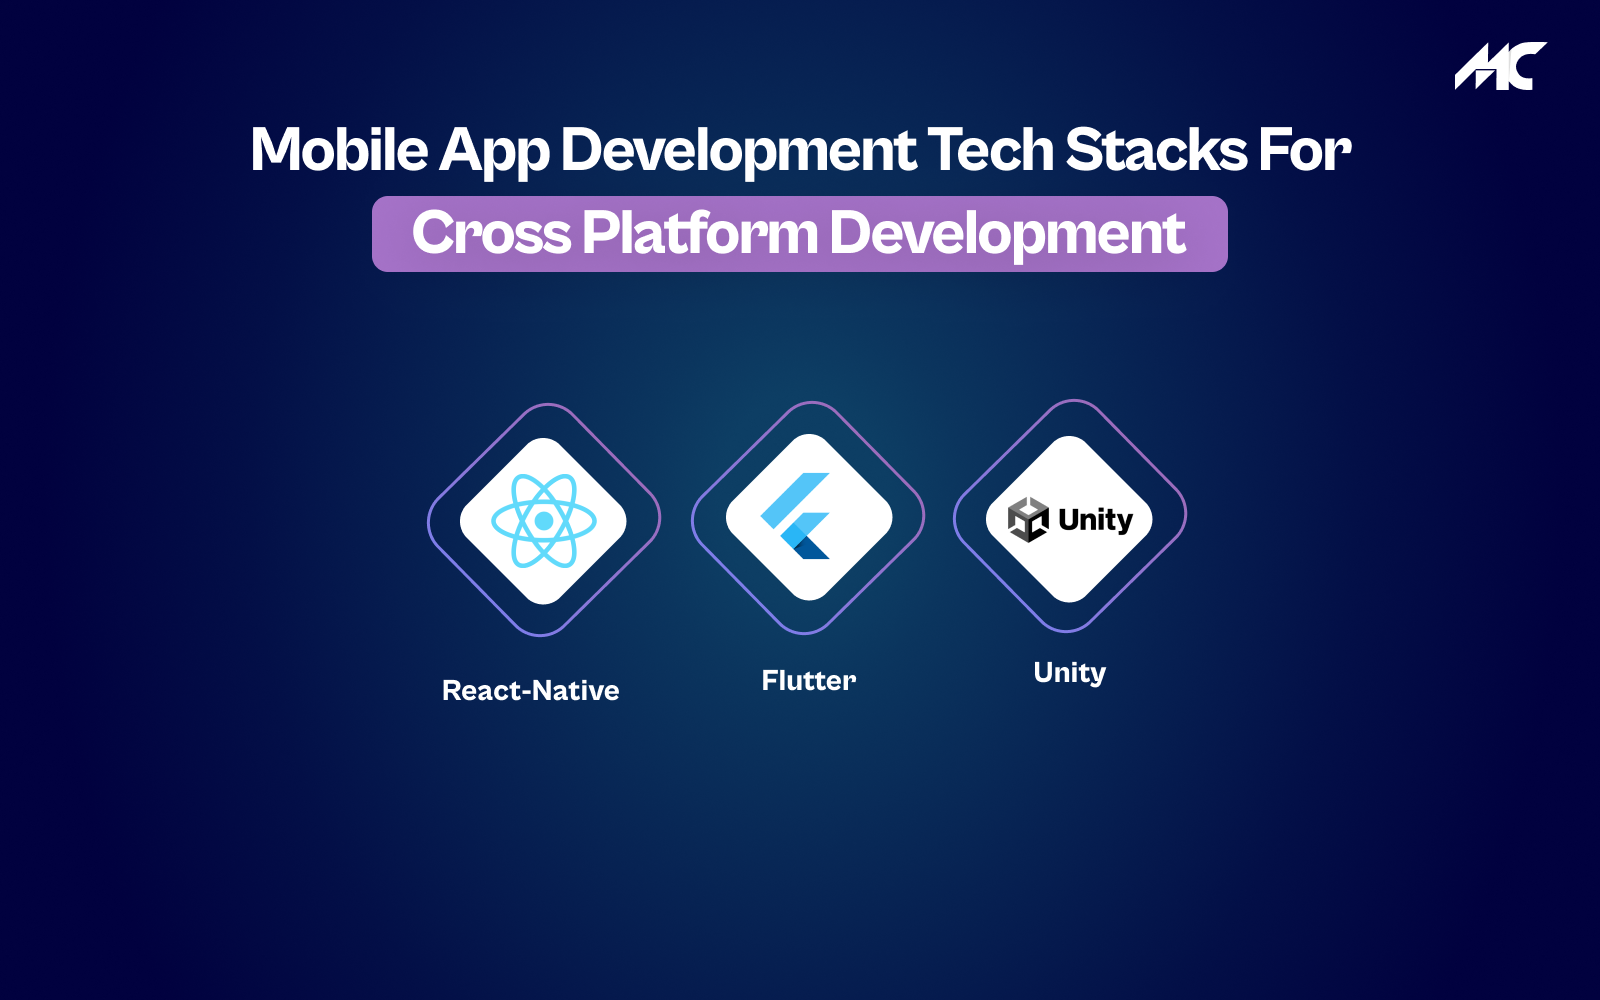 Mobile App Development Tech Stacks for Cross-Platform Development